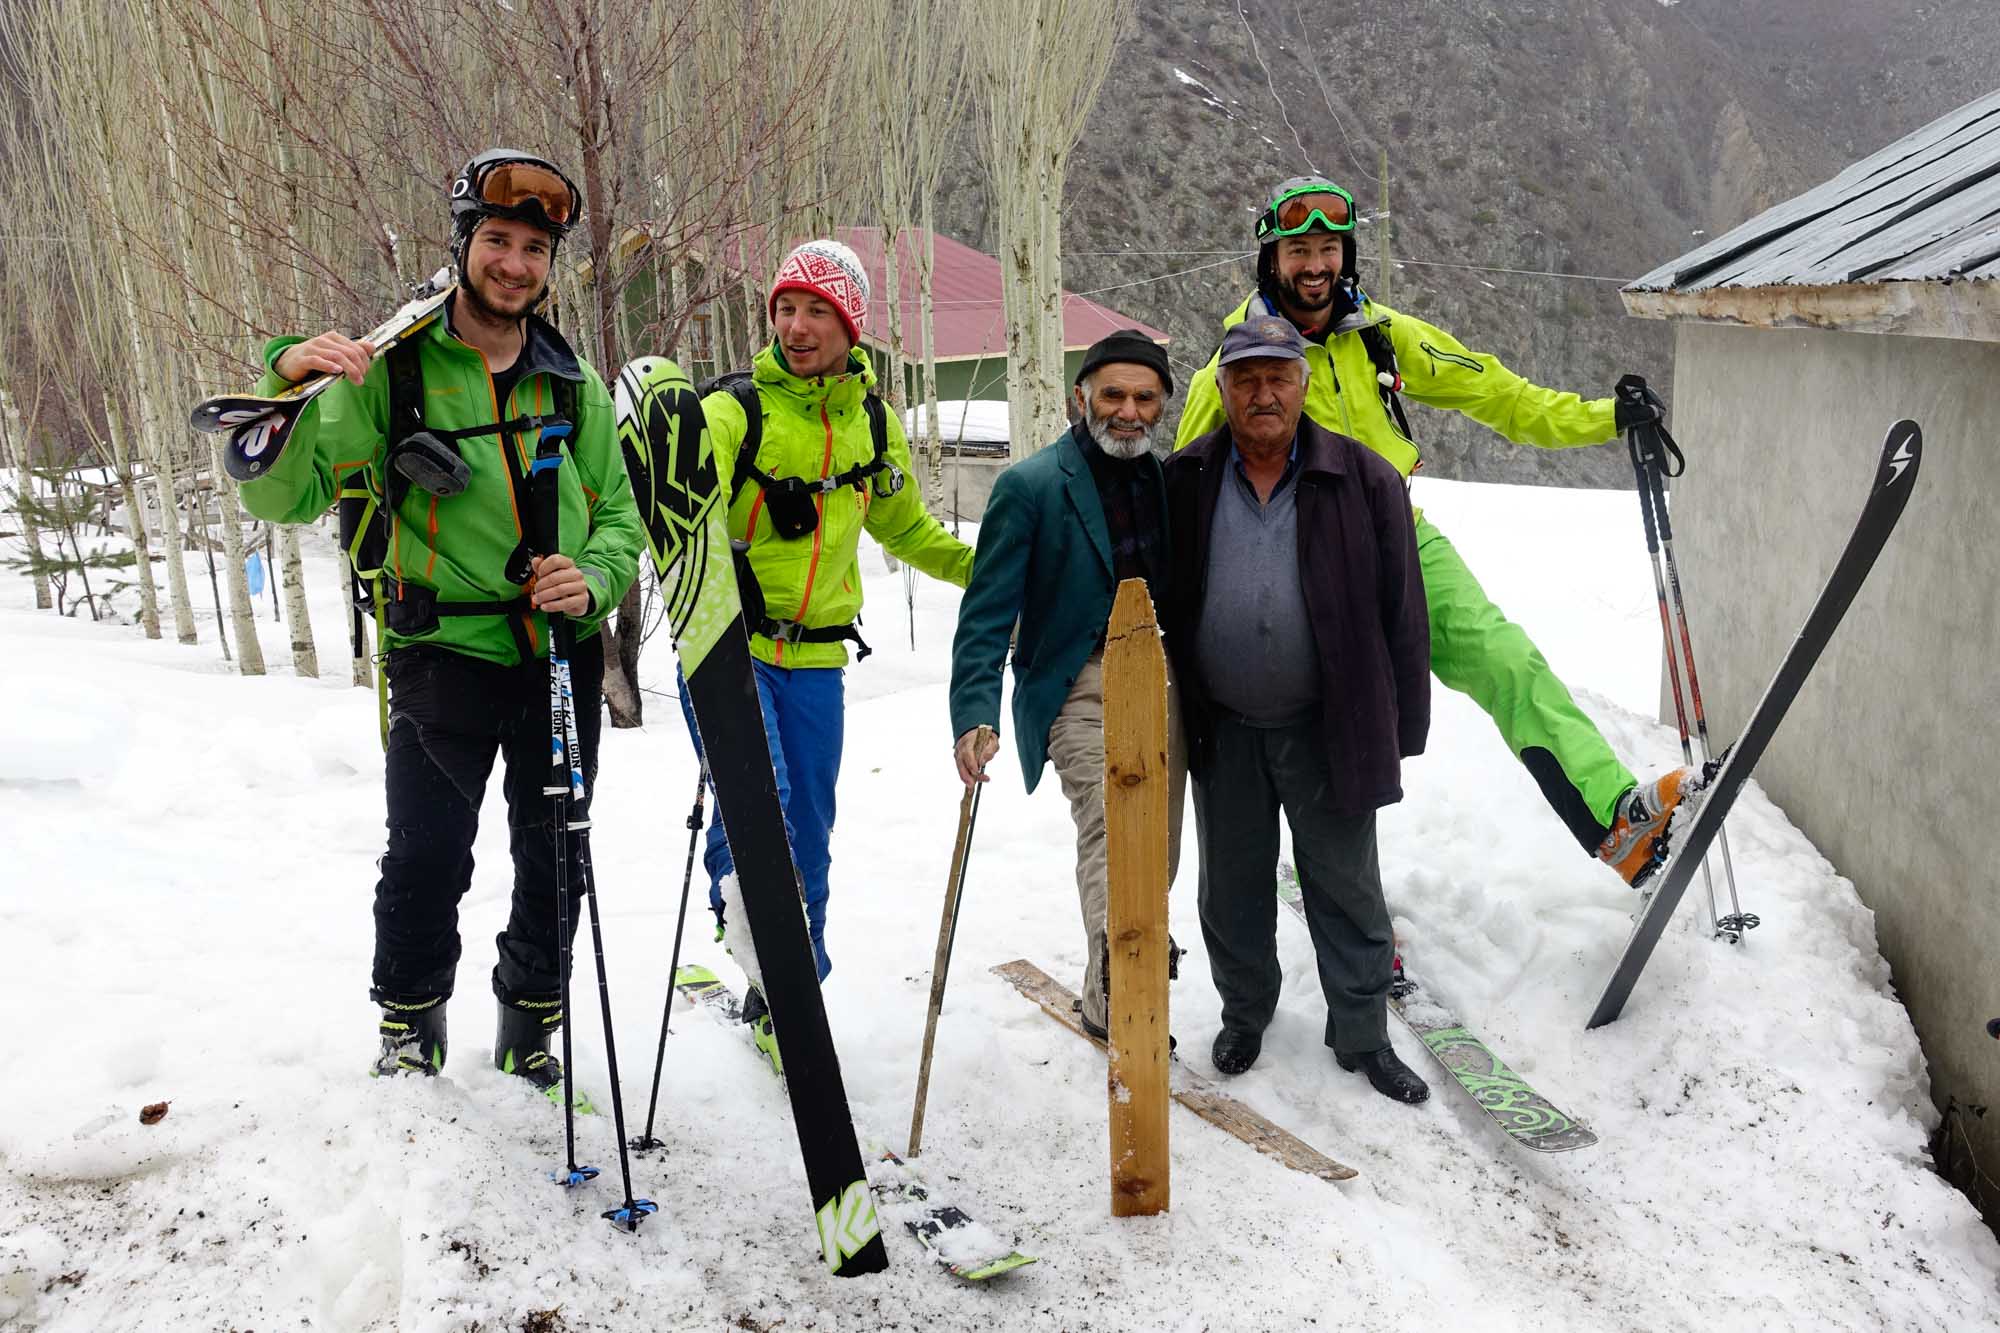 ALPINIST: Skitourenfahrt Türkei 2016